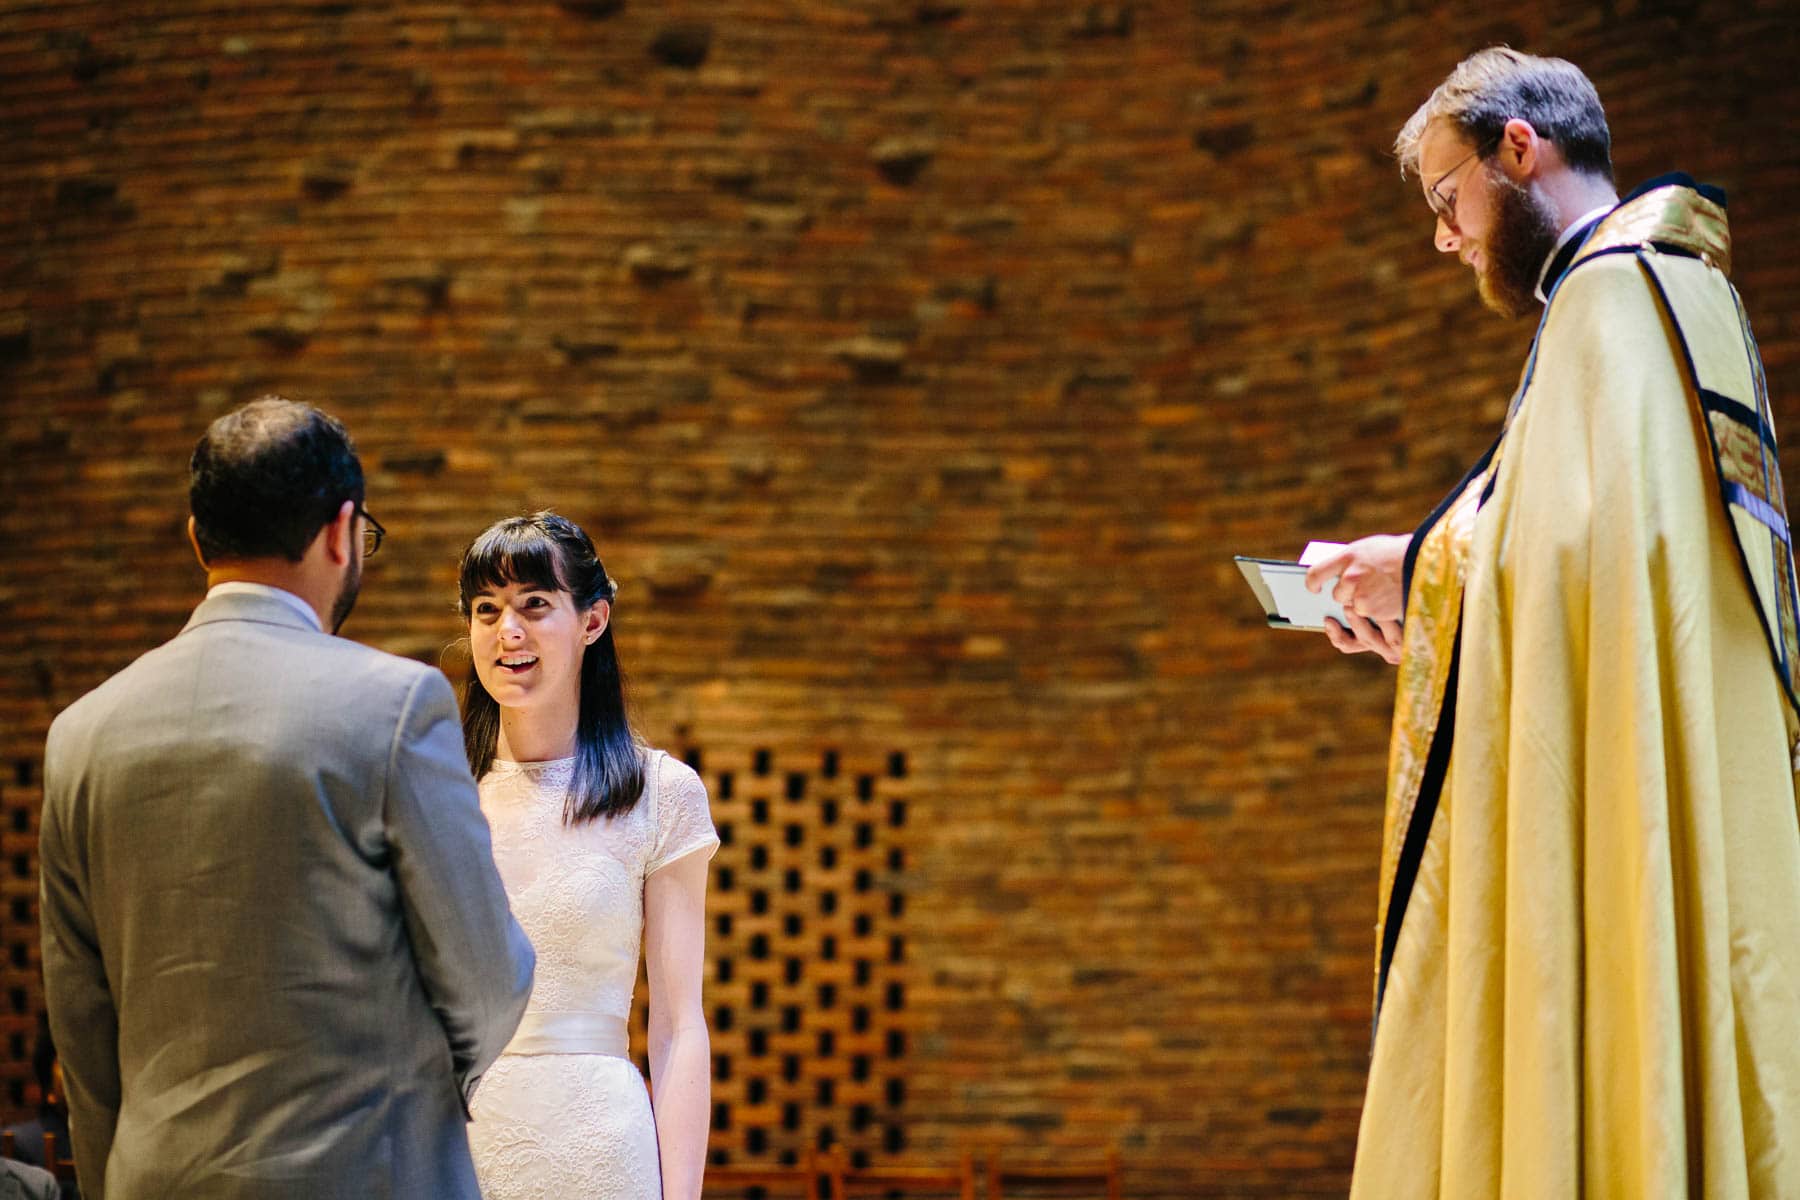 The MIT Chapel wedding of Sara and Iain. Photo by Kelly Benvenuto.